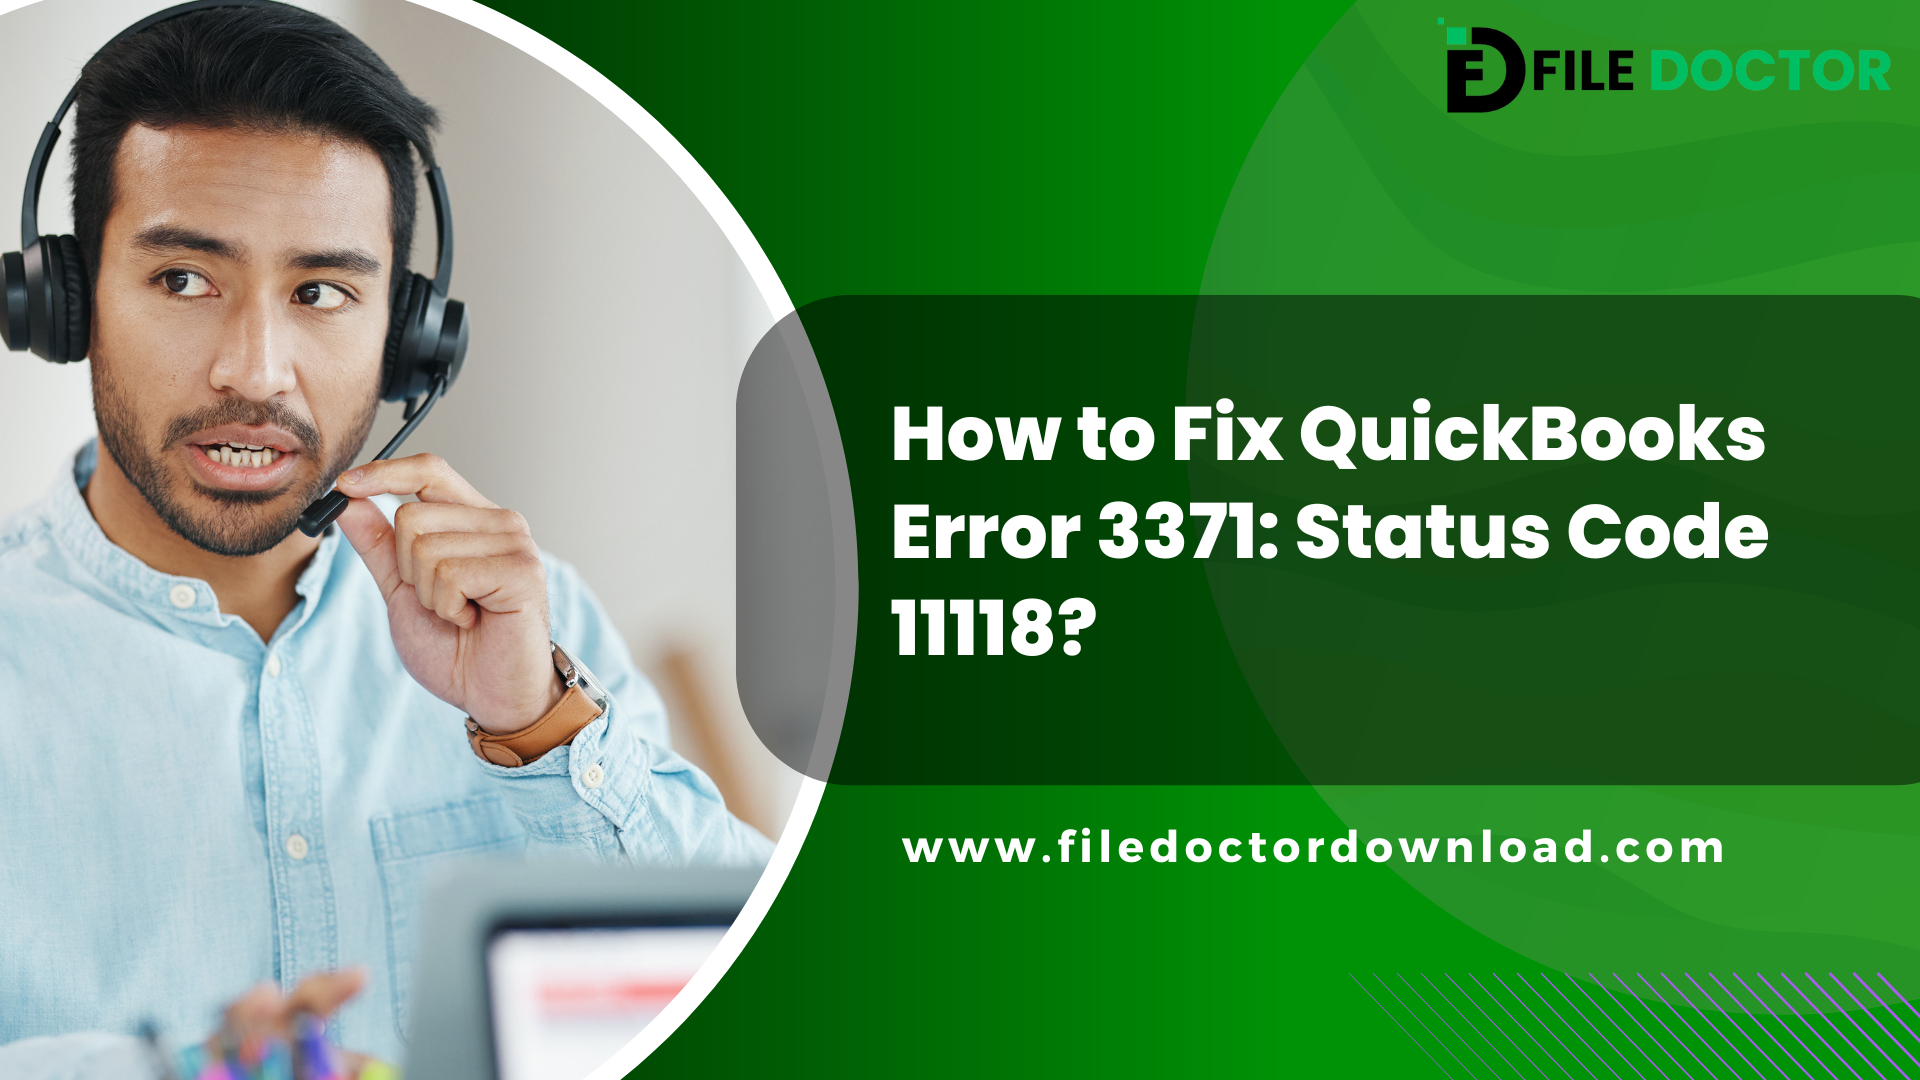 How to Fix QuickBooks Error 3371: Status Code 11118?